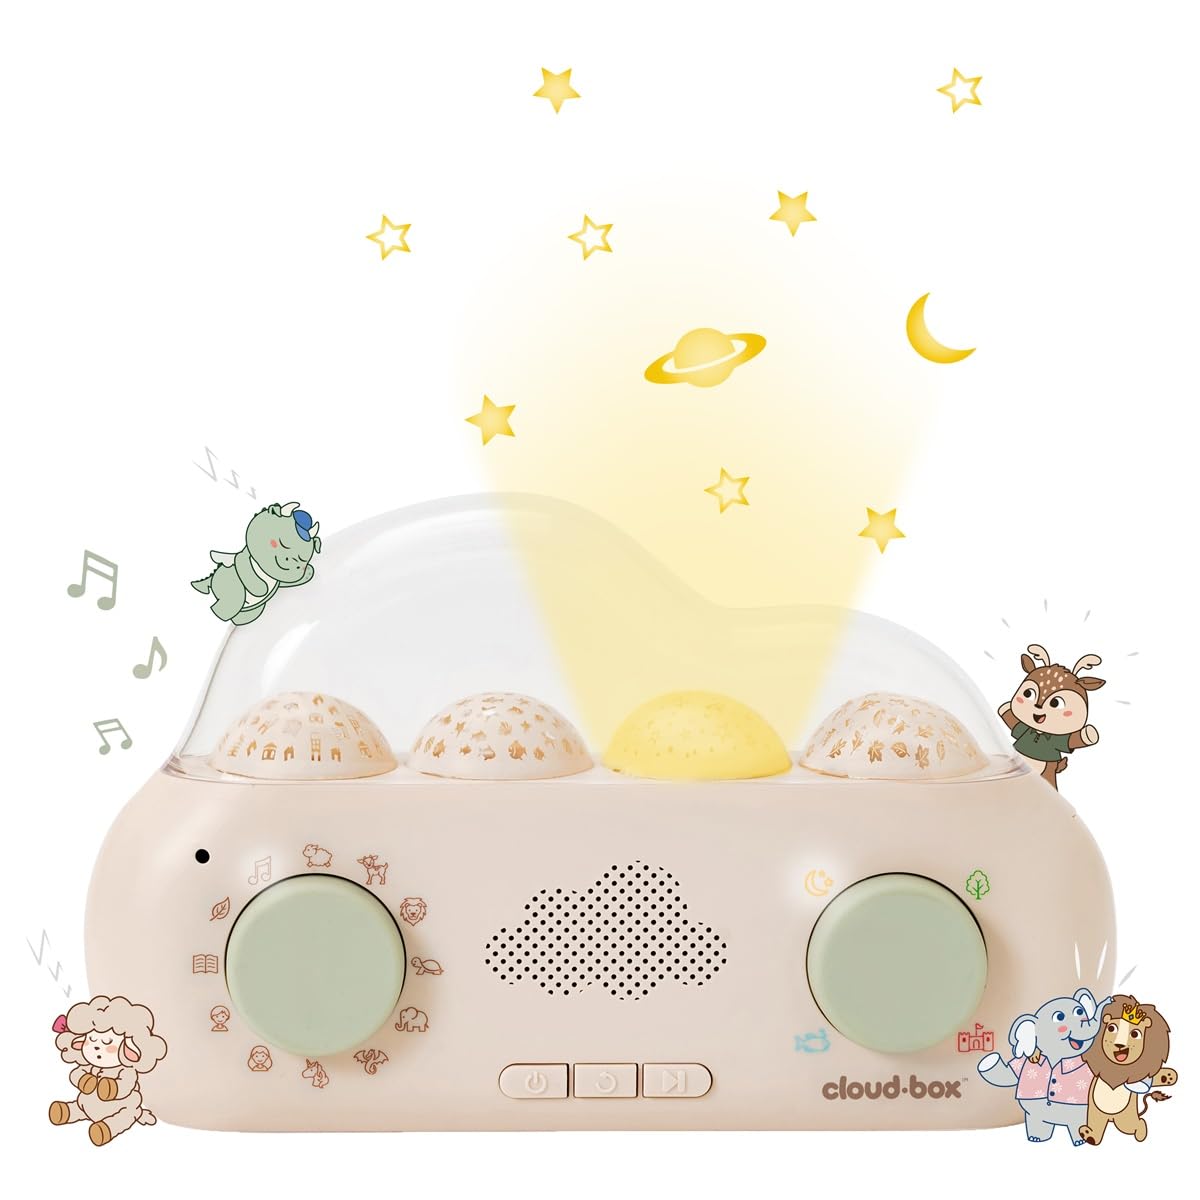 Cloud-Box-hörspielbox-Lichtprojektor-cloud-b-berlindleuxe-planeten-licht-lautsprecher